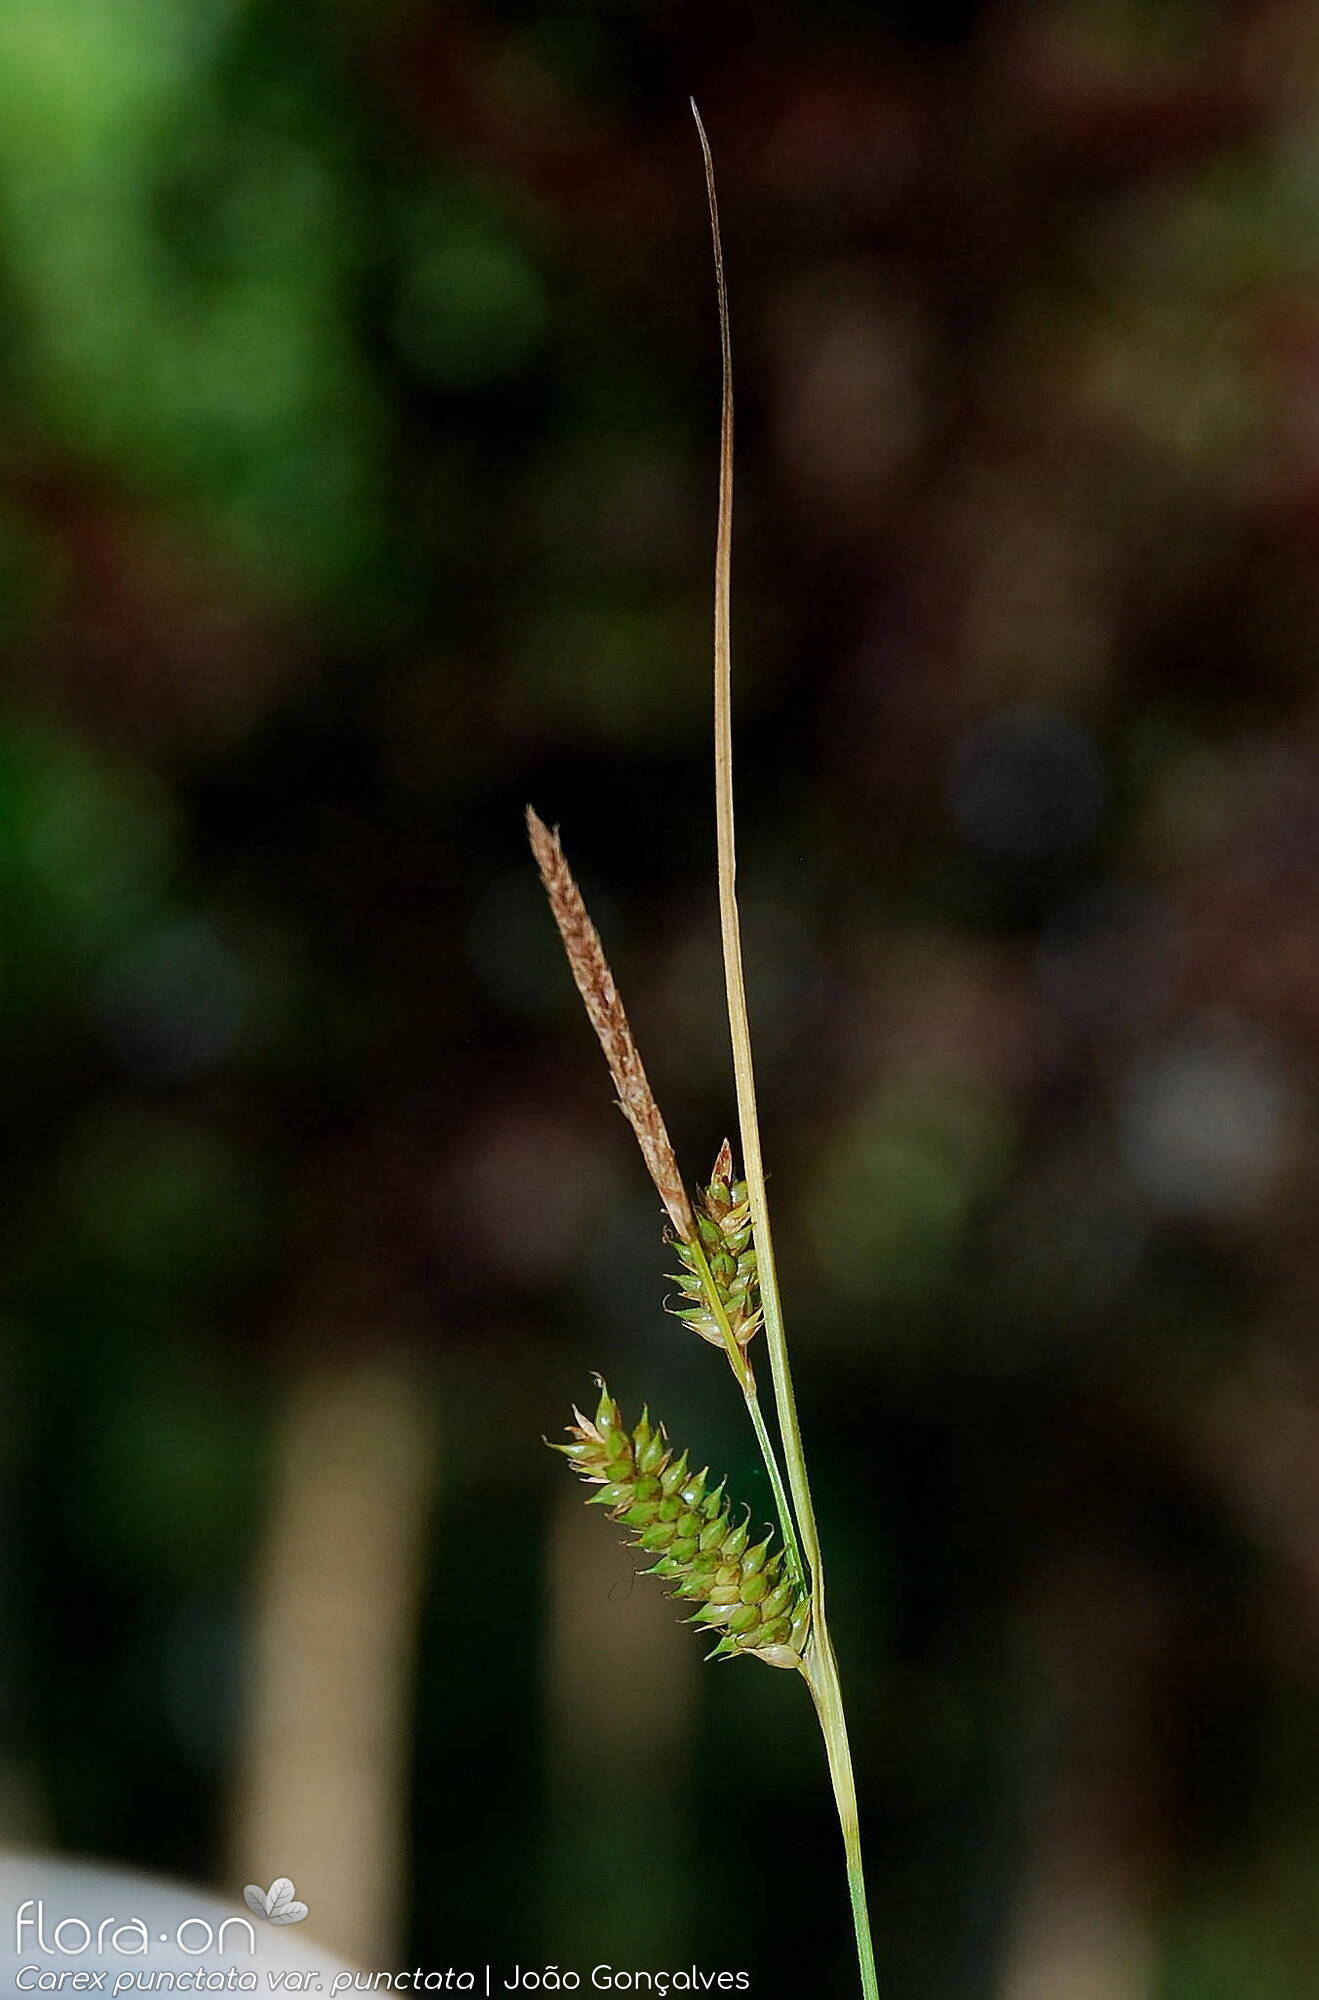 Carex punctata punctata - Flor (geral) | João Gonçalves; CC BY-NC 4.0